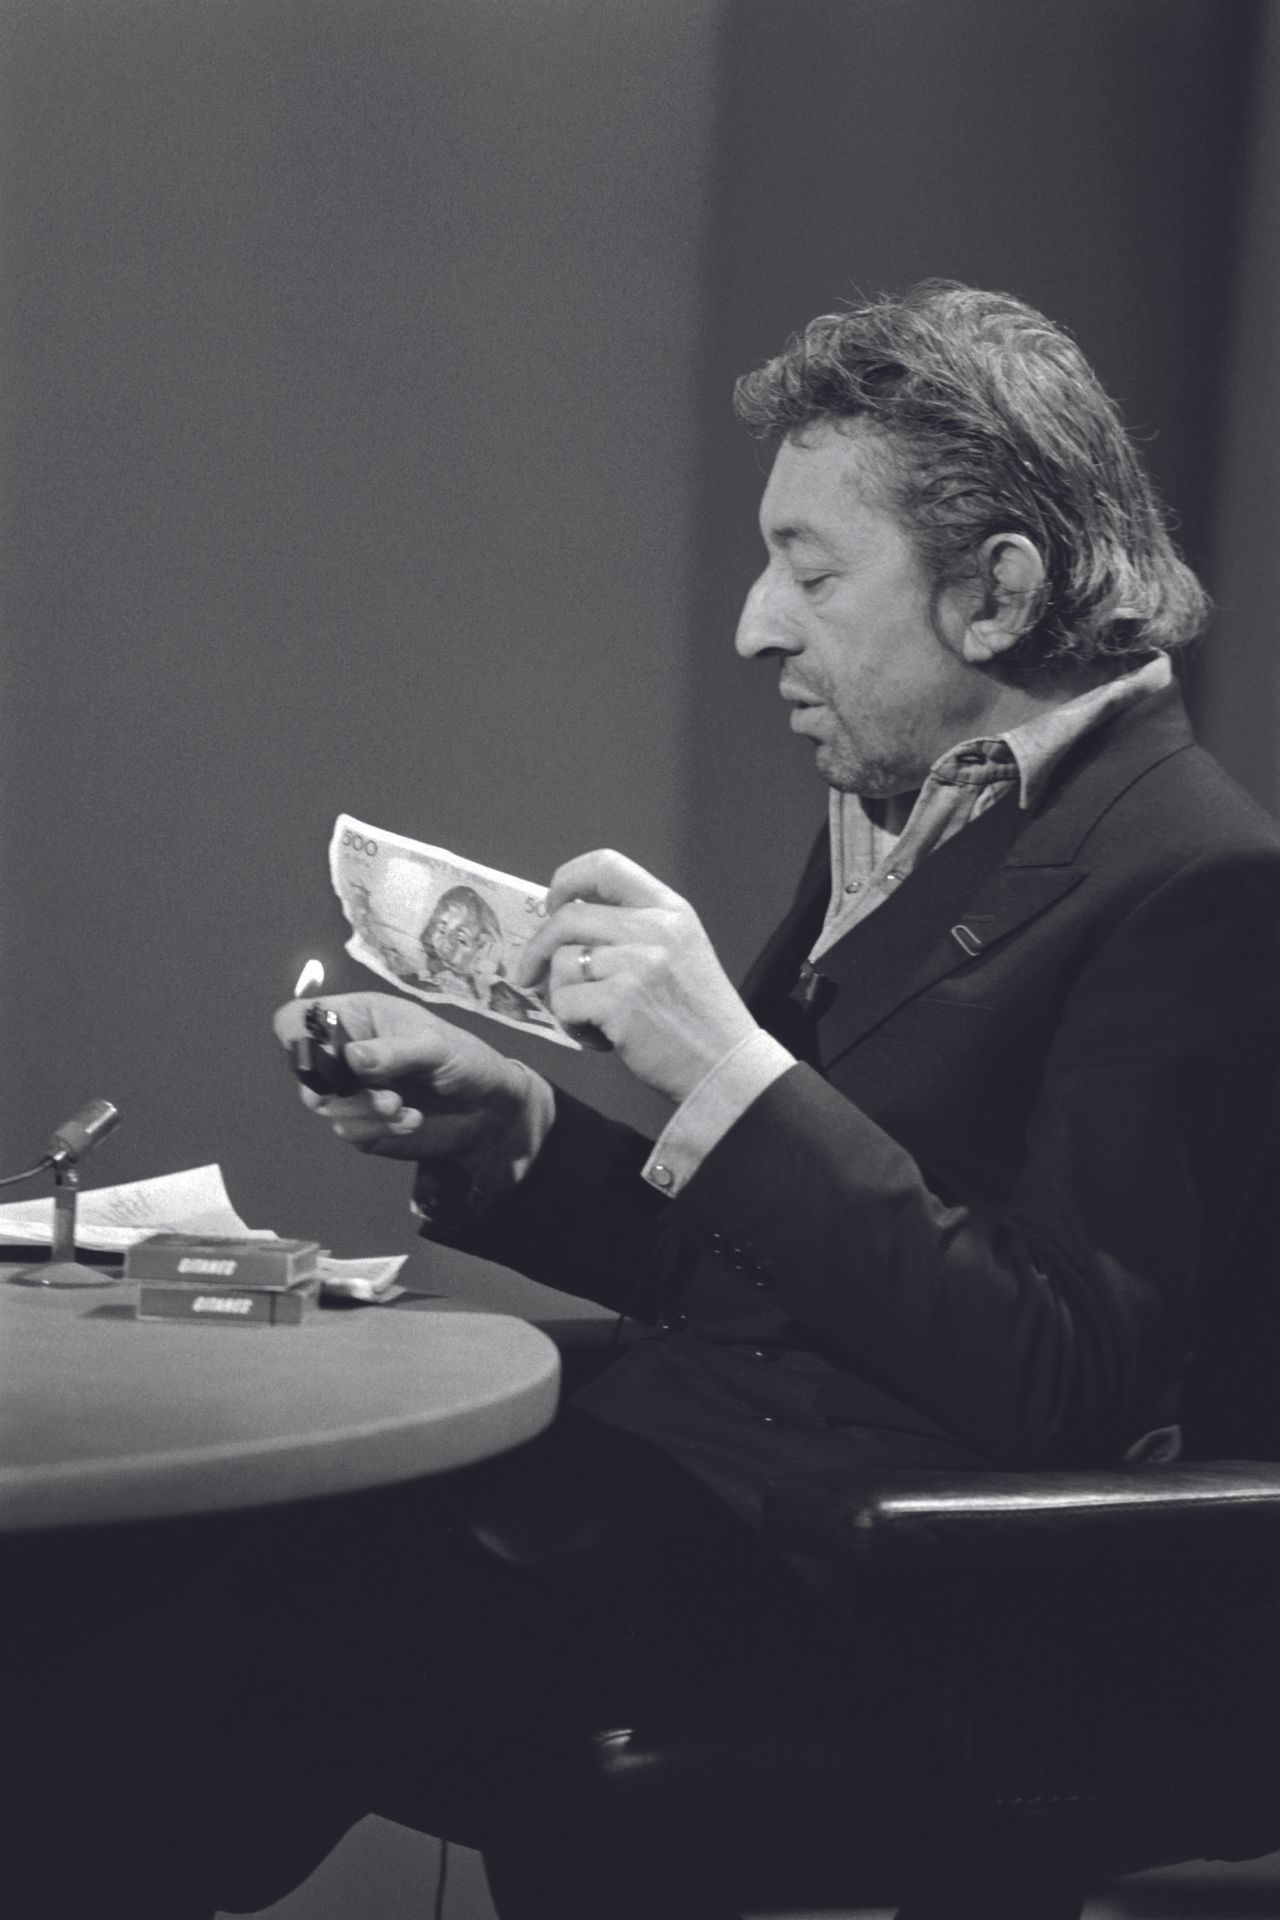 AFP - Philippe WOJAZER AFP - Philippe WOJAZER

Serge Gainsbourg verbrennt einen &hellip;